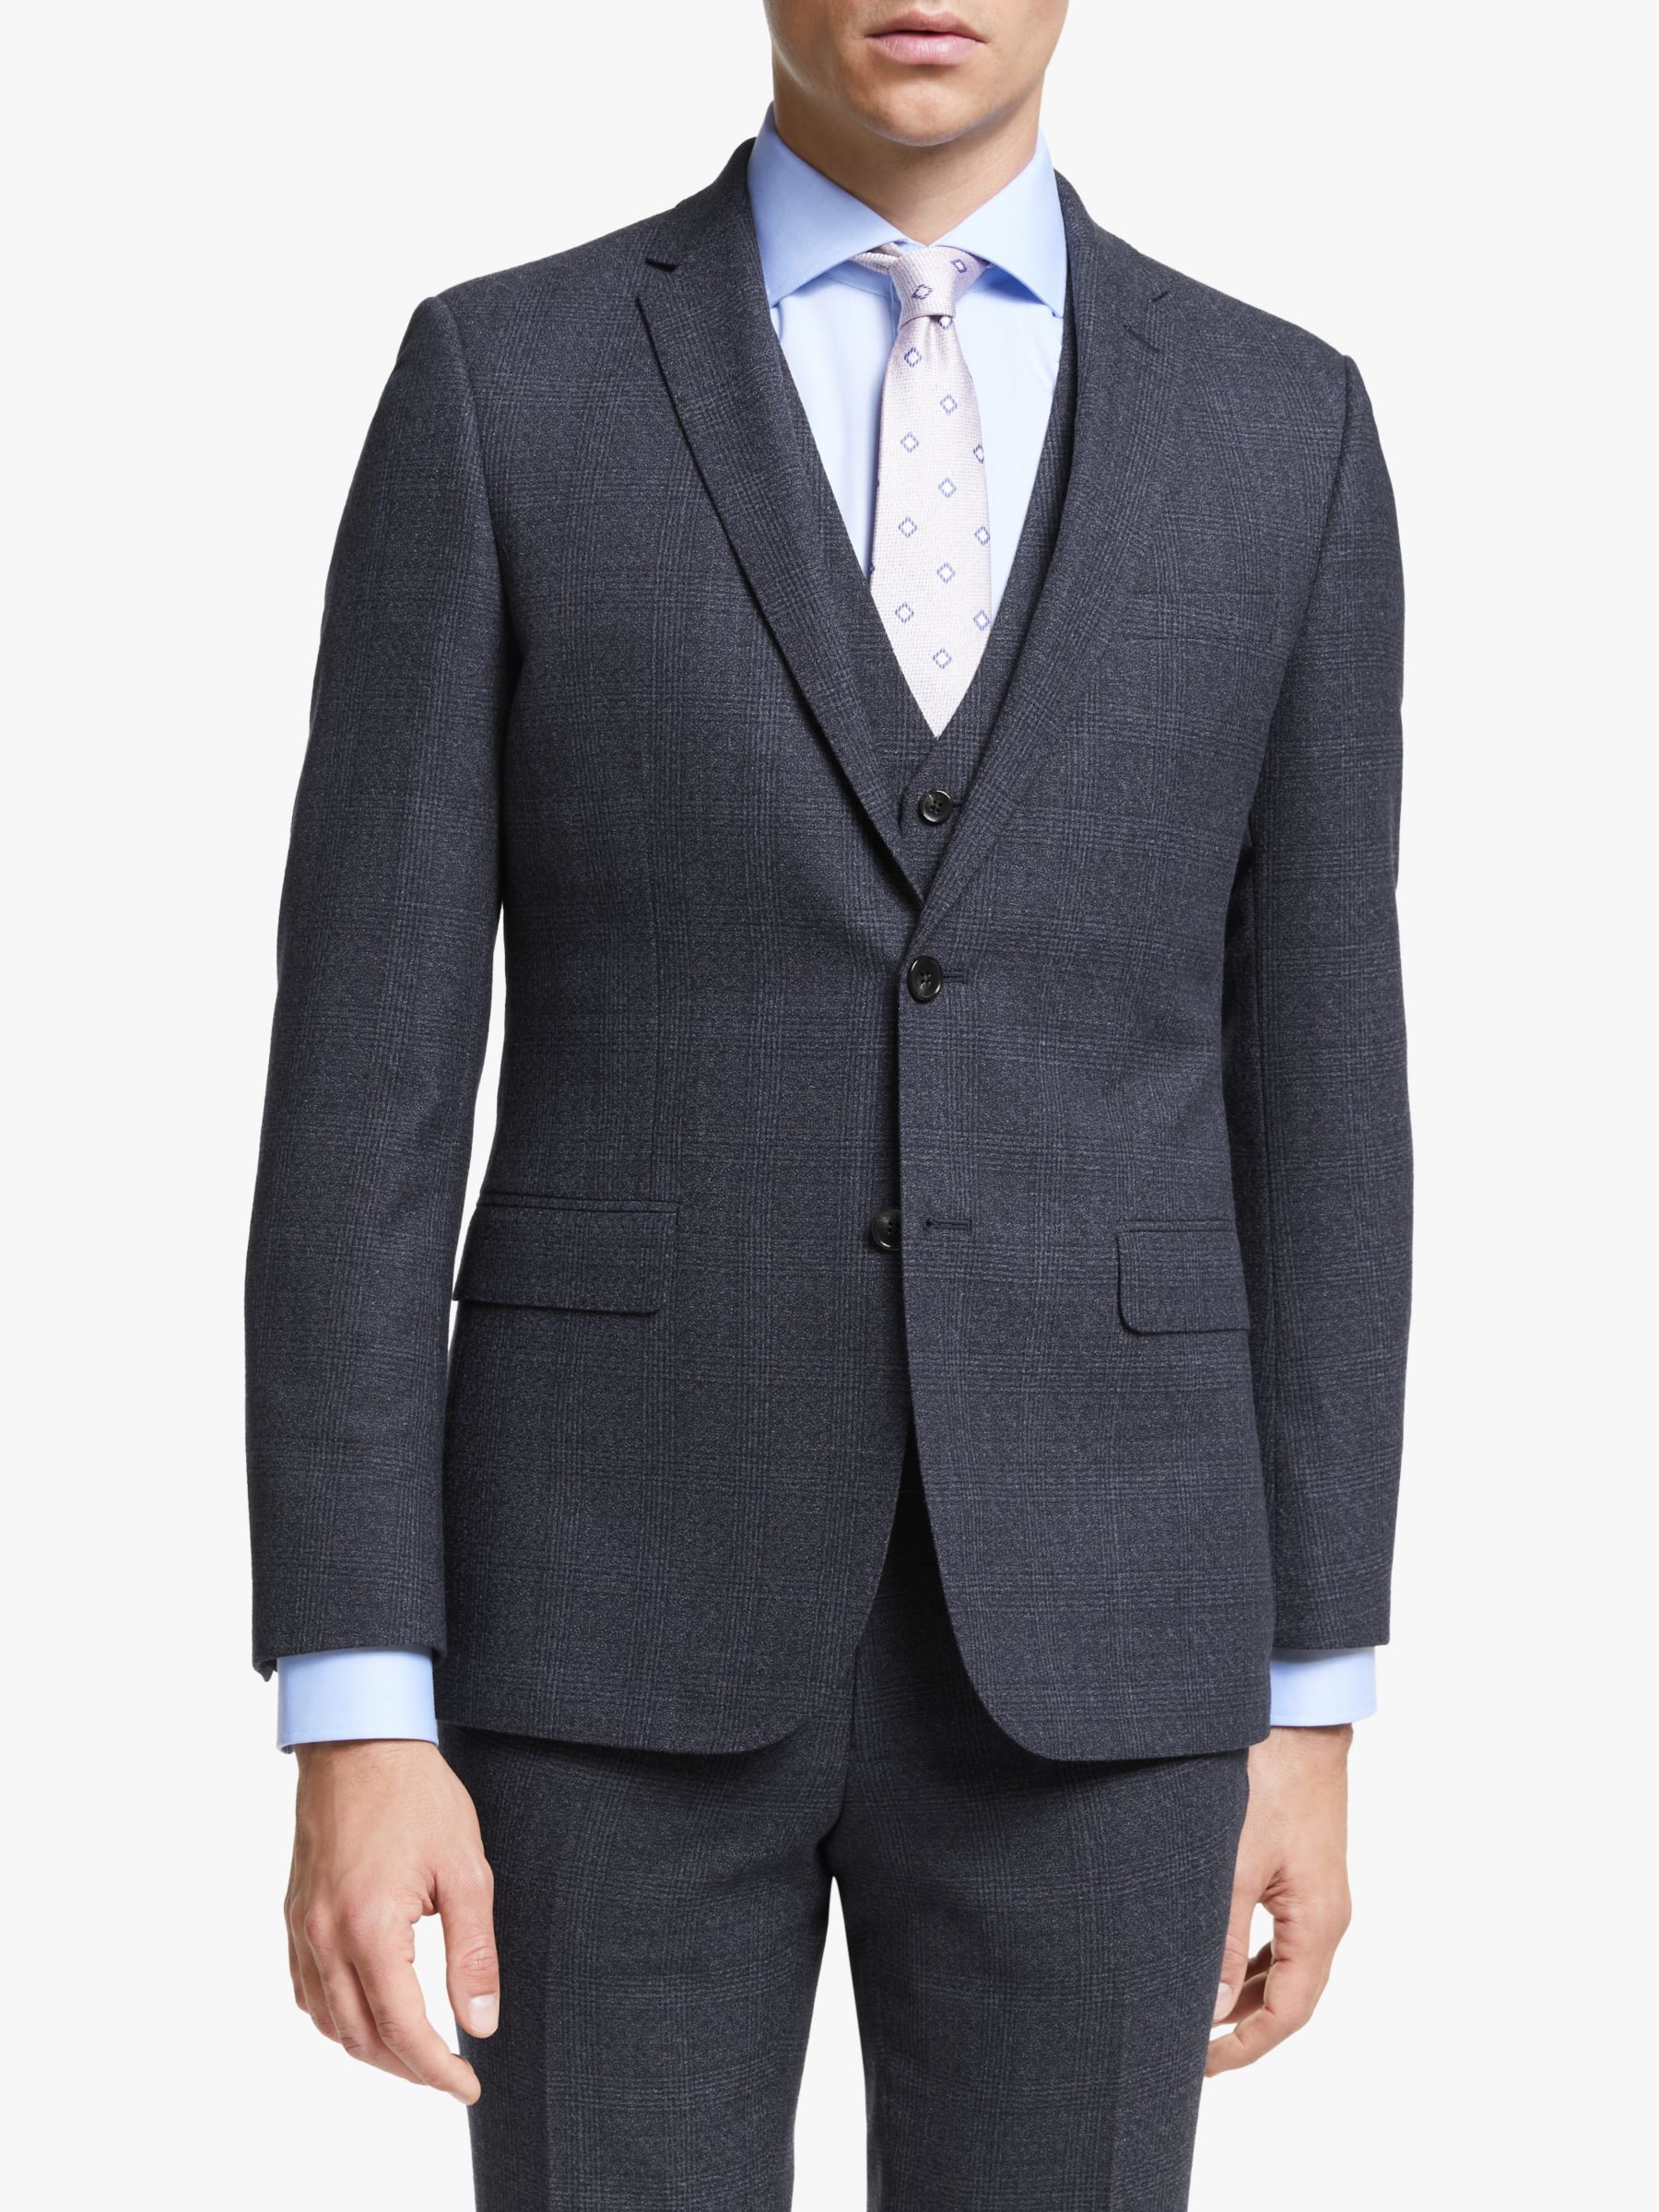 John Lewis & Partners Wool Check Slim Fit Suit Jacket, Navy